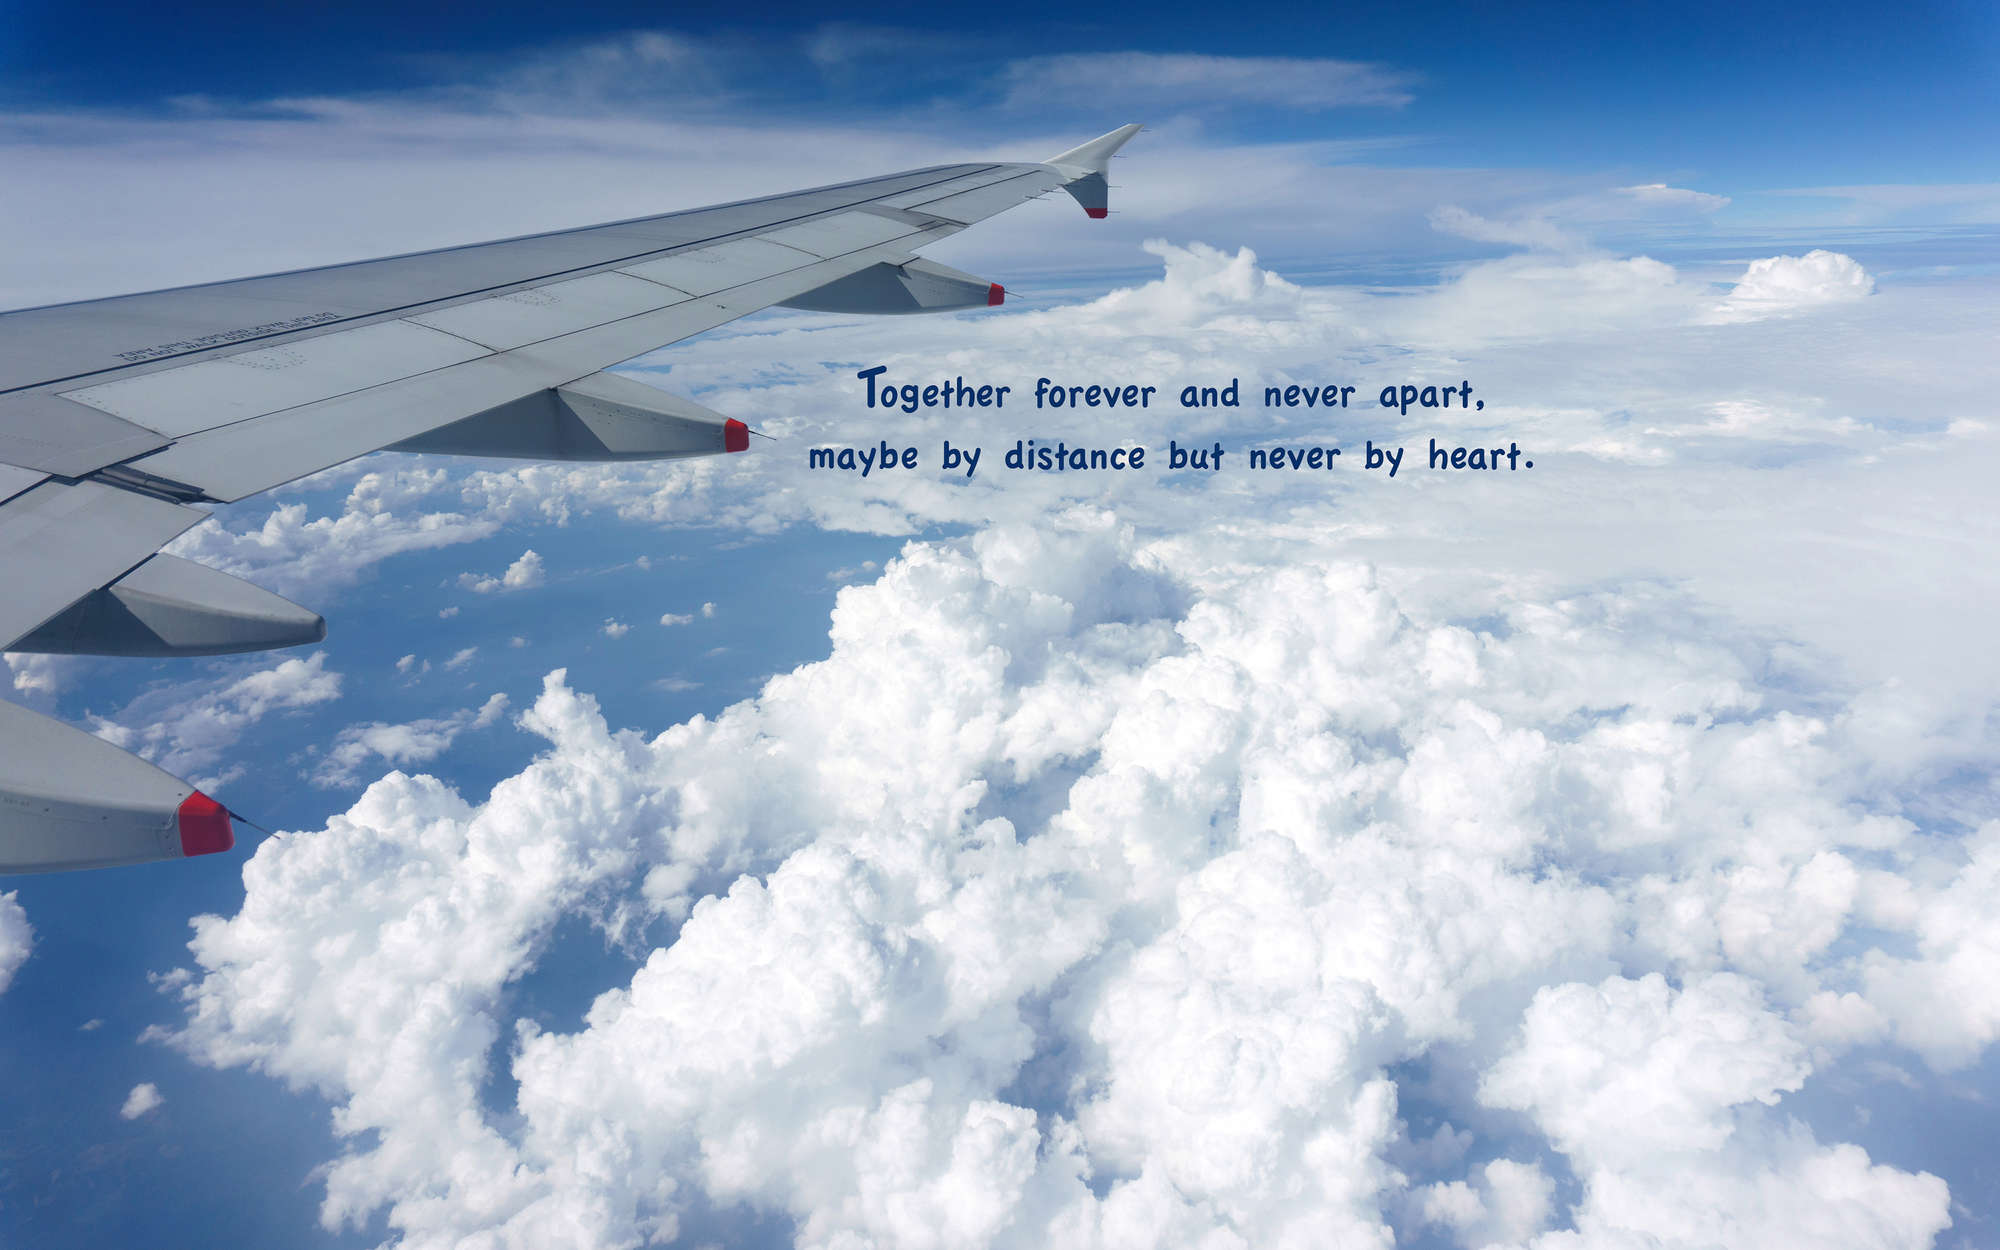             papiers peints à impression numérique avion au-dessus des nuages avec inscription - Premium intissé lisse
        